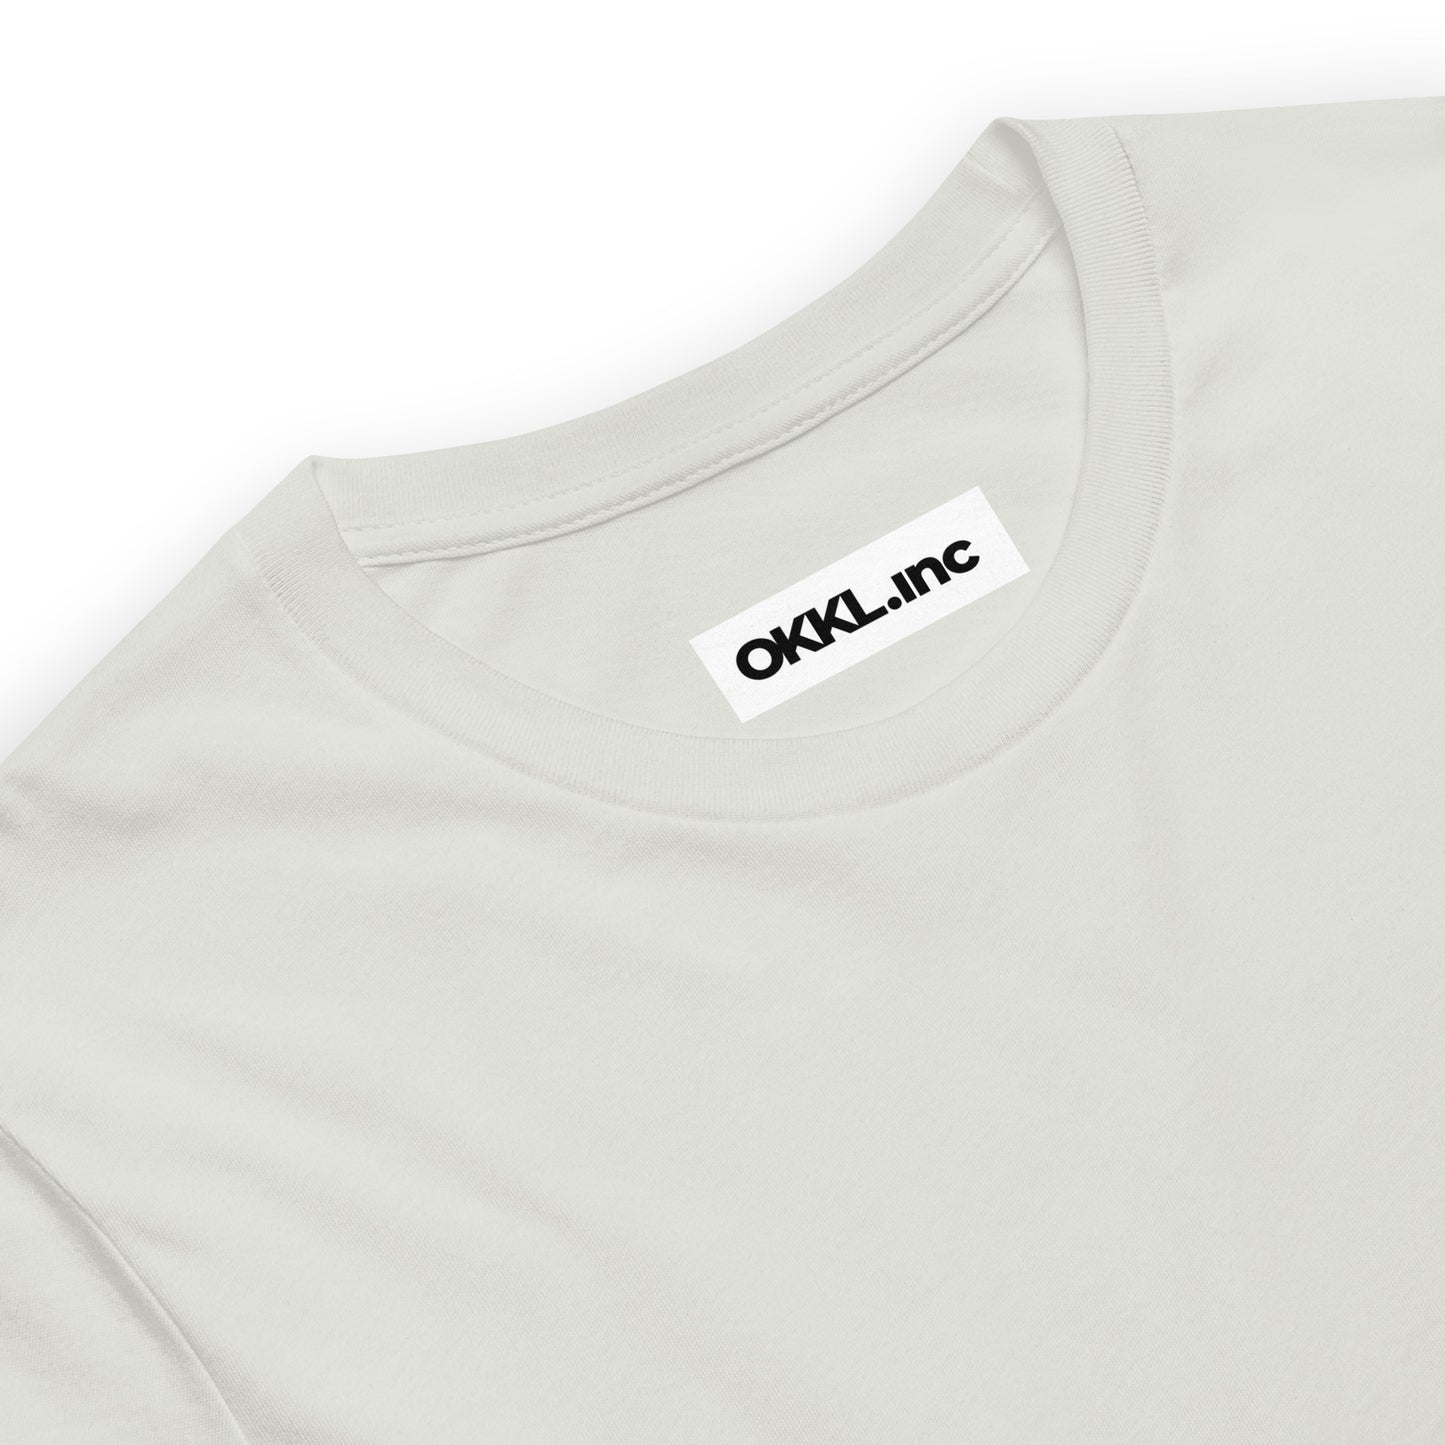 OKKL Rhino: Light Grey Unisex t-shirt